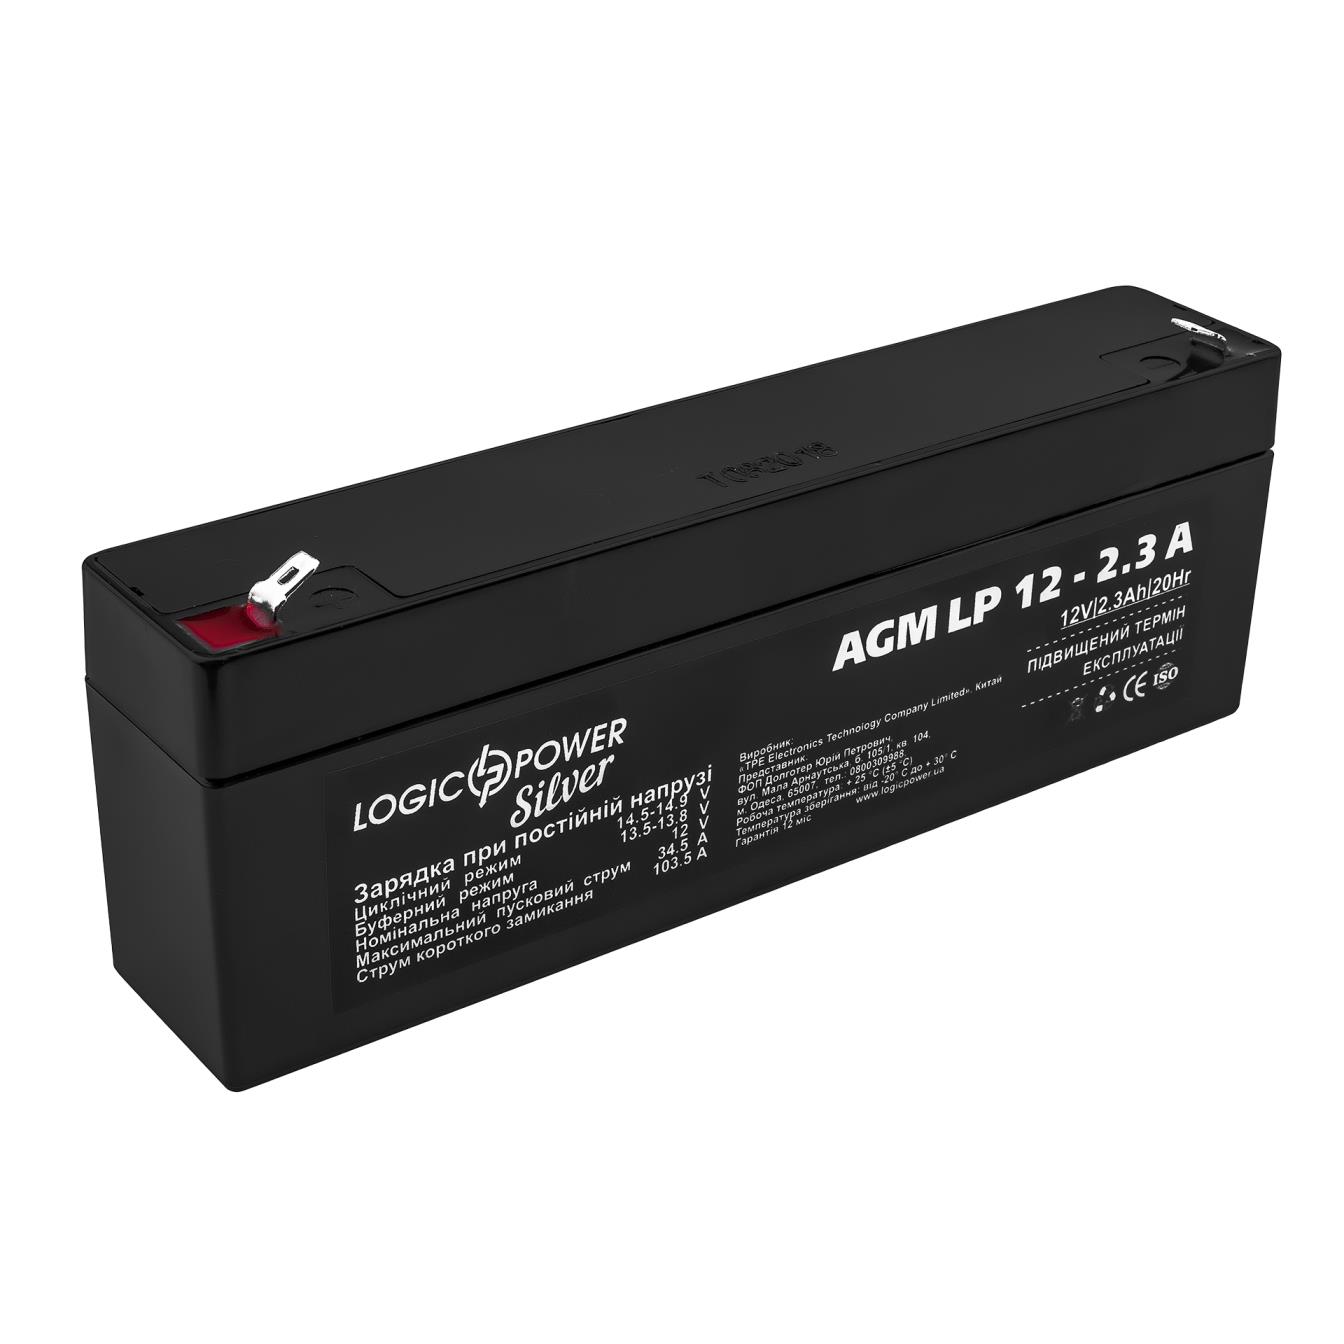 Акумулятор свинцево-кислотний LogicPower AGM LP 12V - 2.3 Ah Silver (3224) в інтернет-магазині, головне фото